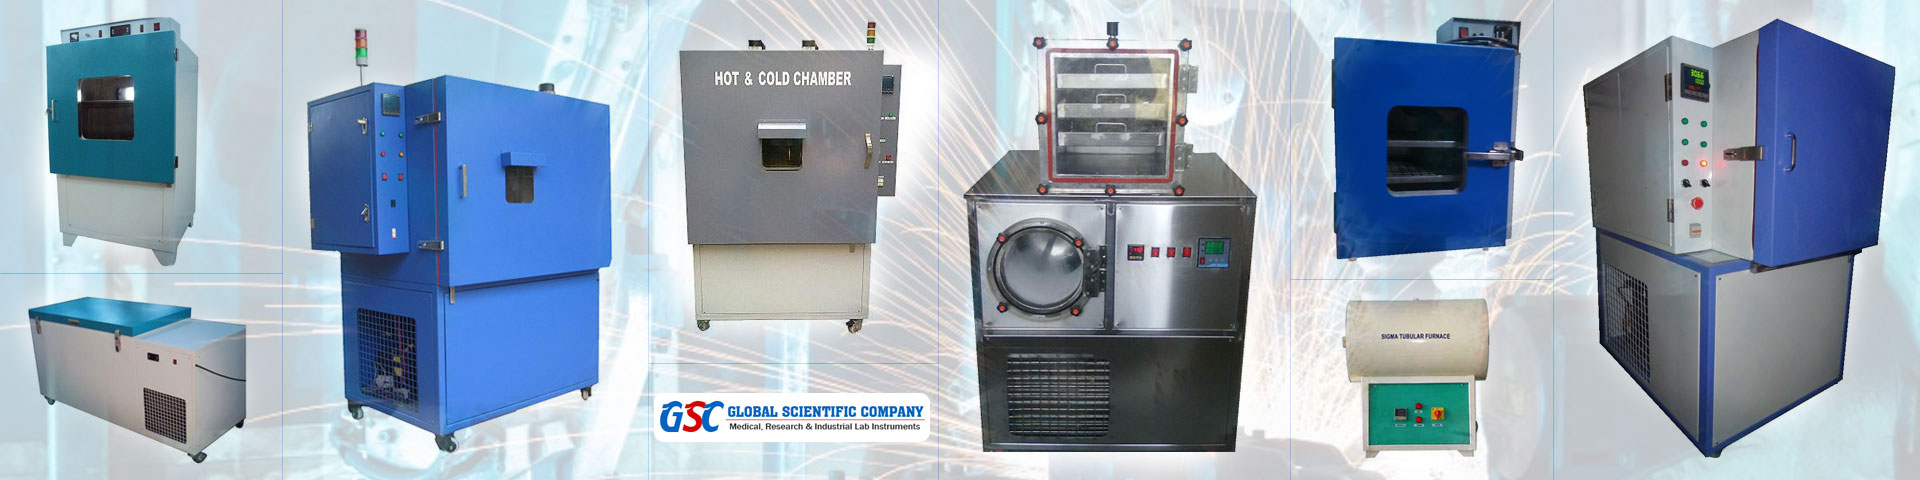 Subzero Temperature Test Chamber - Global Scientific Company Chennai